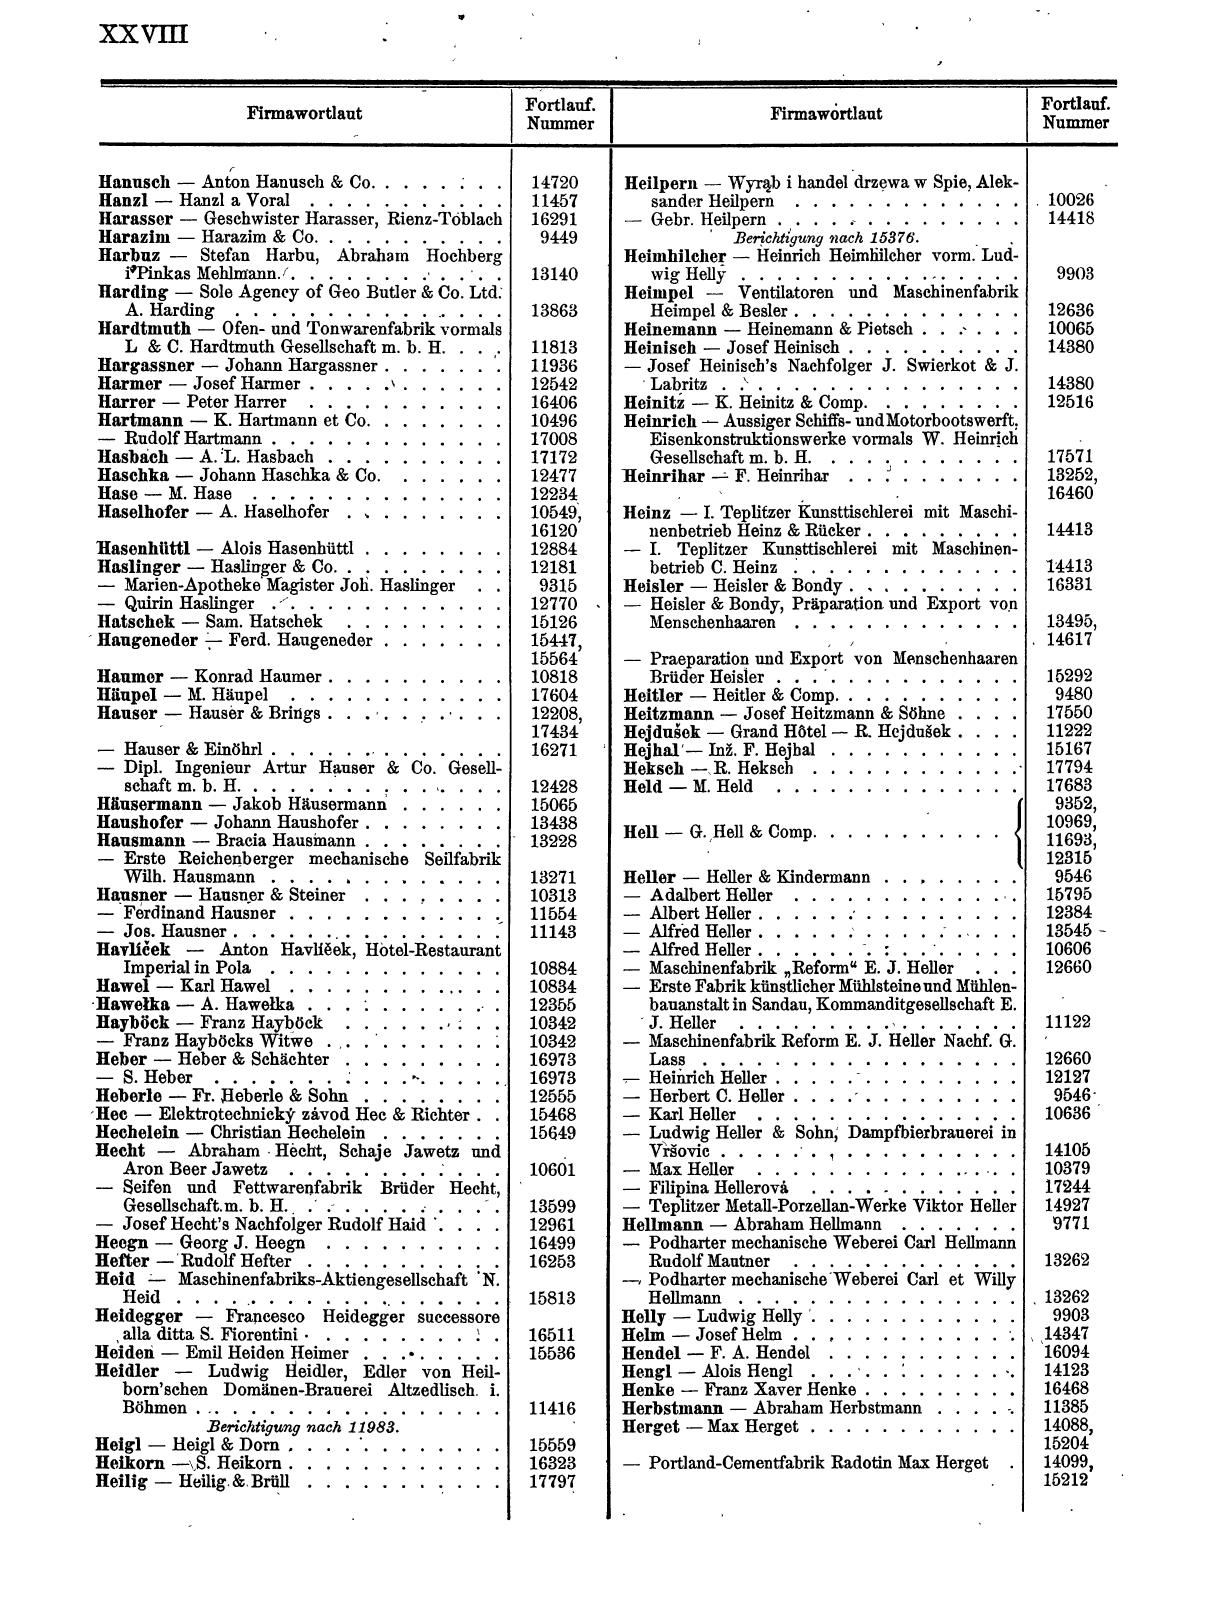 Zentralblatt für die Eintragungen in das Handelsregister 1913, Teil 2 - Seite 32